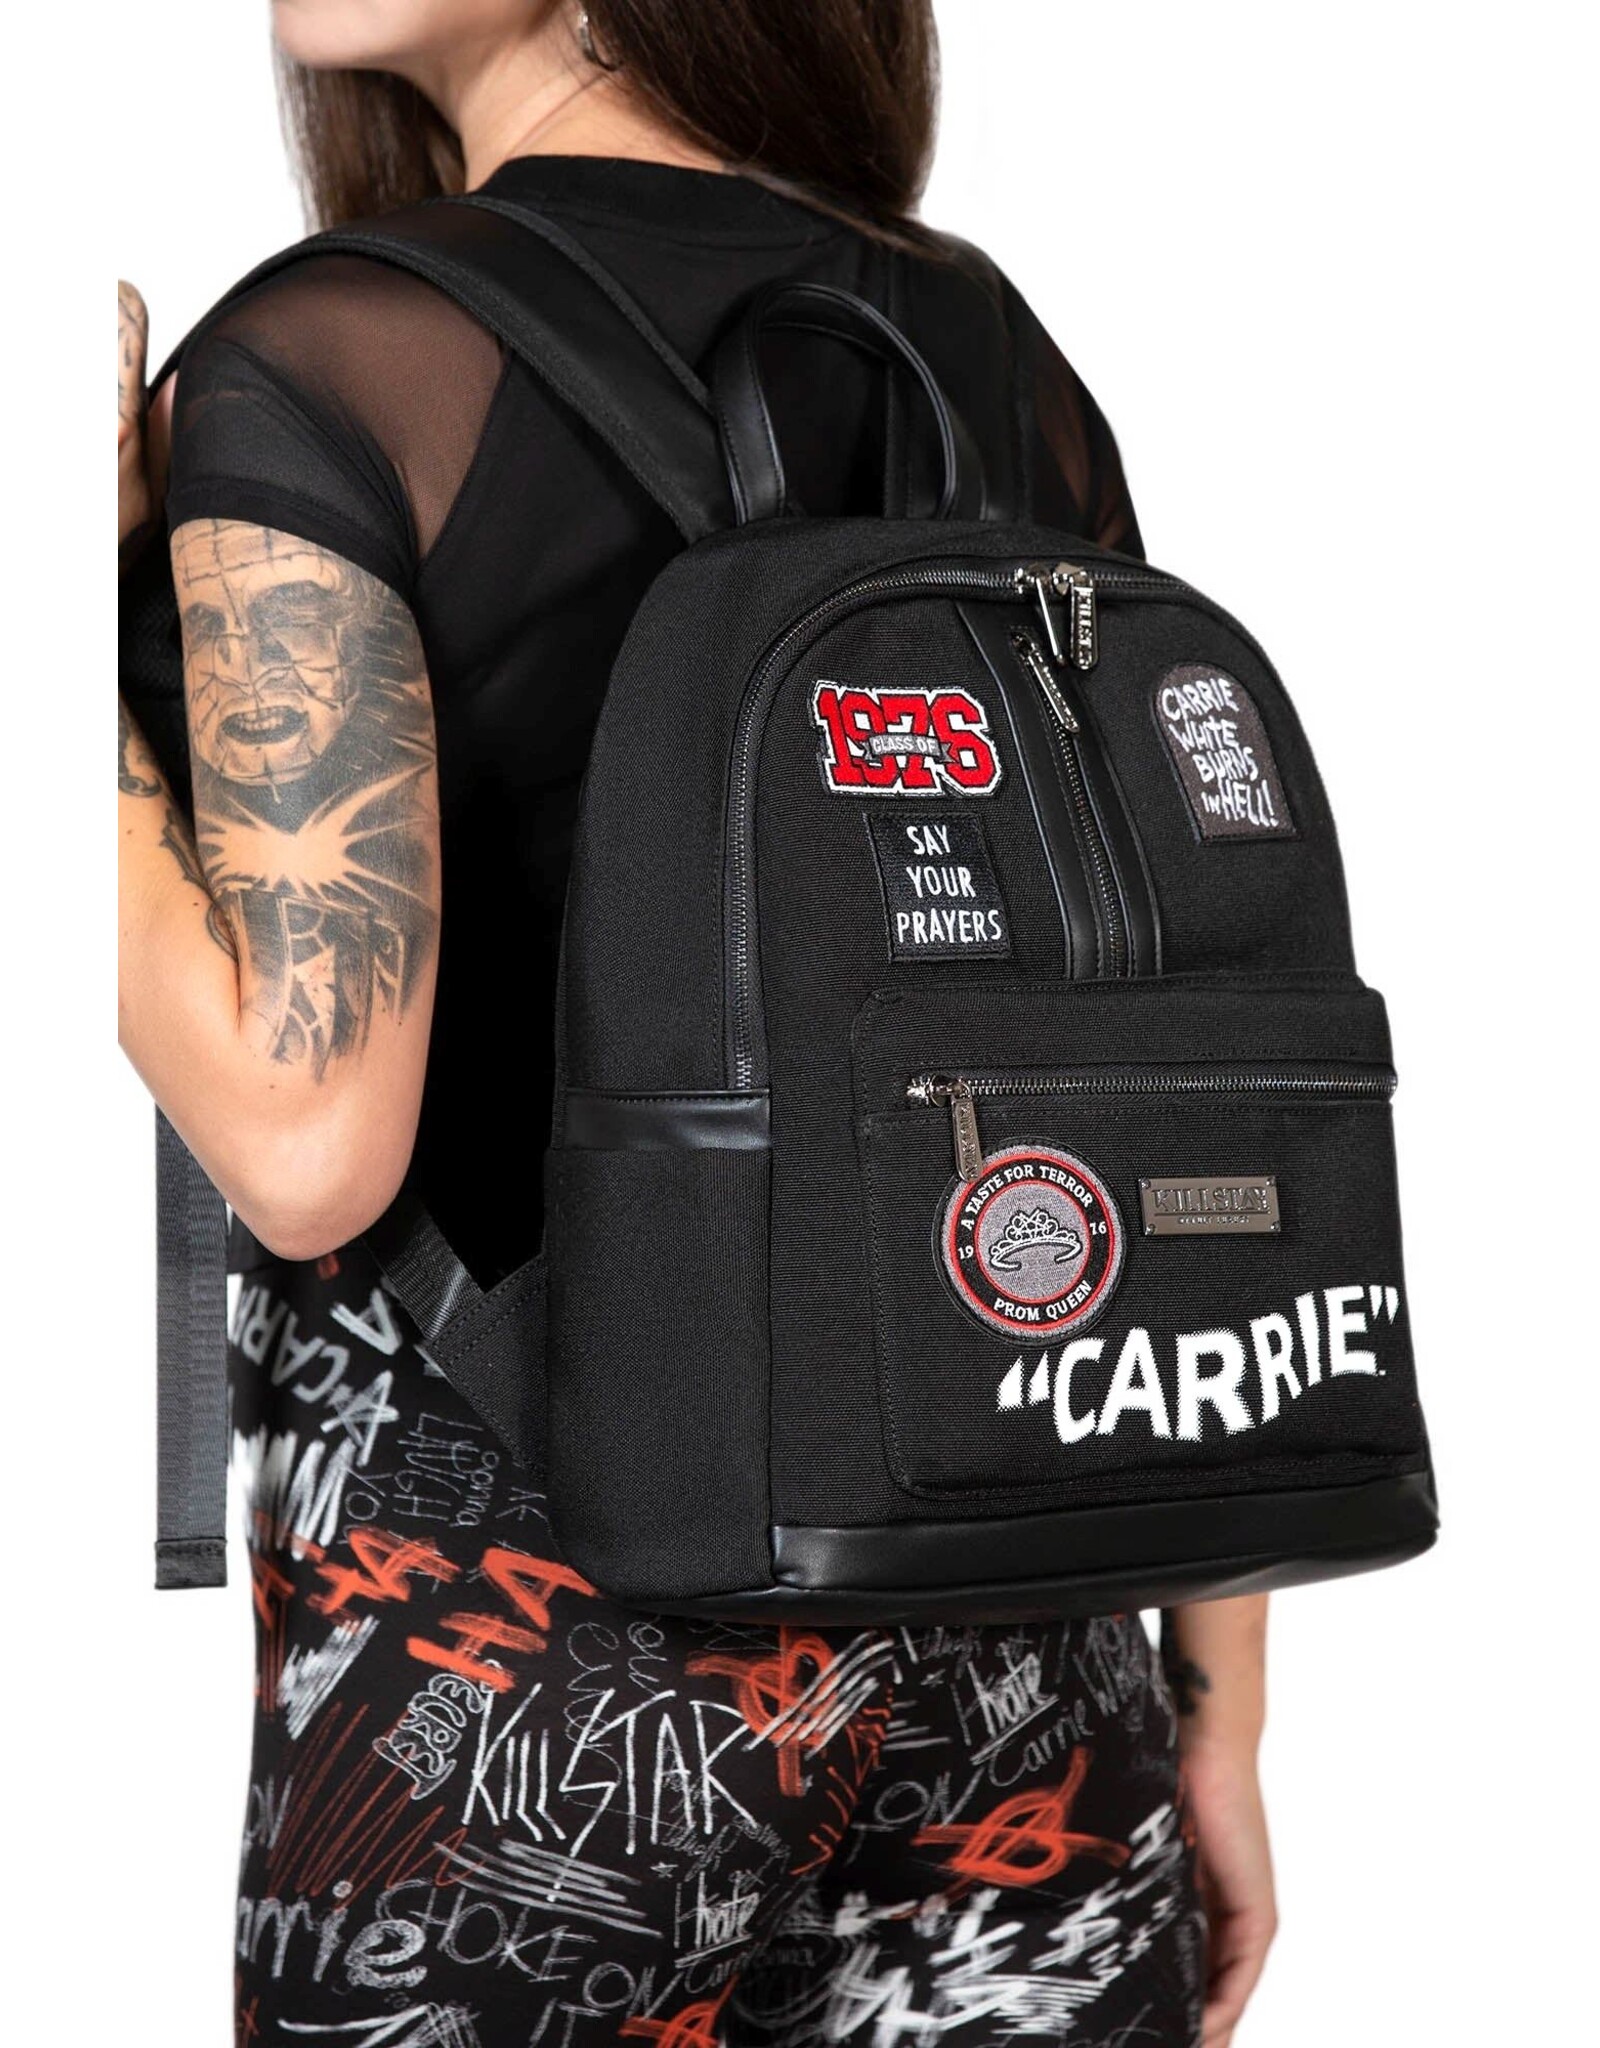 Killstar Killstar bags and accessiries - Killstar  Carrie Backpack